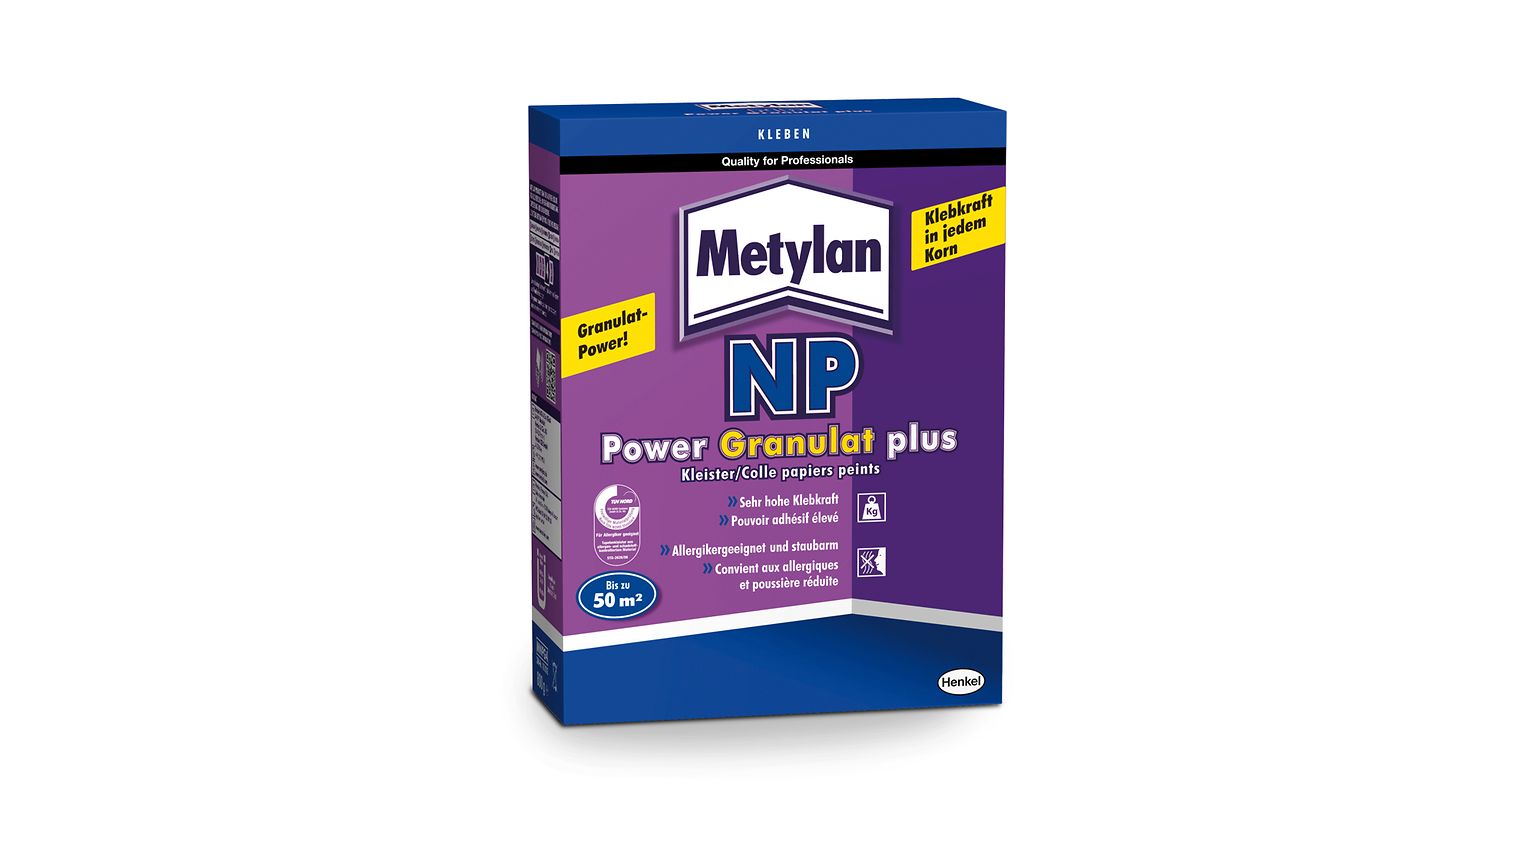 Metylan NP Power Granulat Plus ist neben dem 5-kg-Eimer auch in der praktischen 800-g-Packung erhältlich.